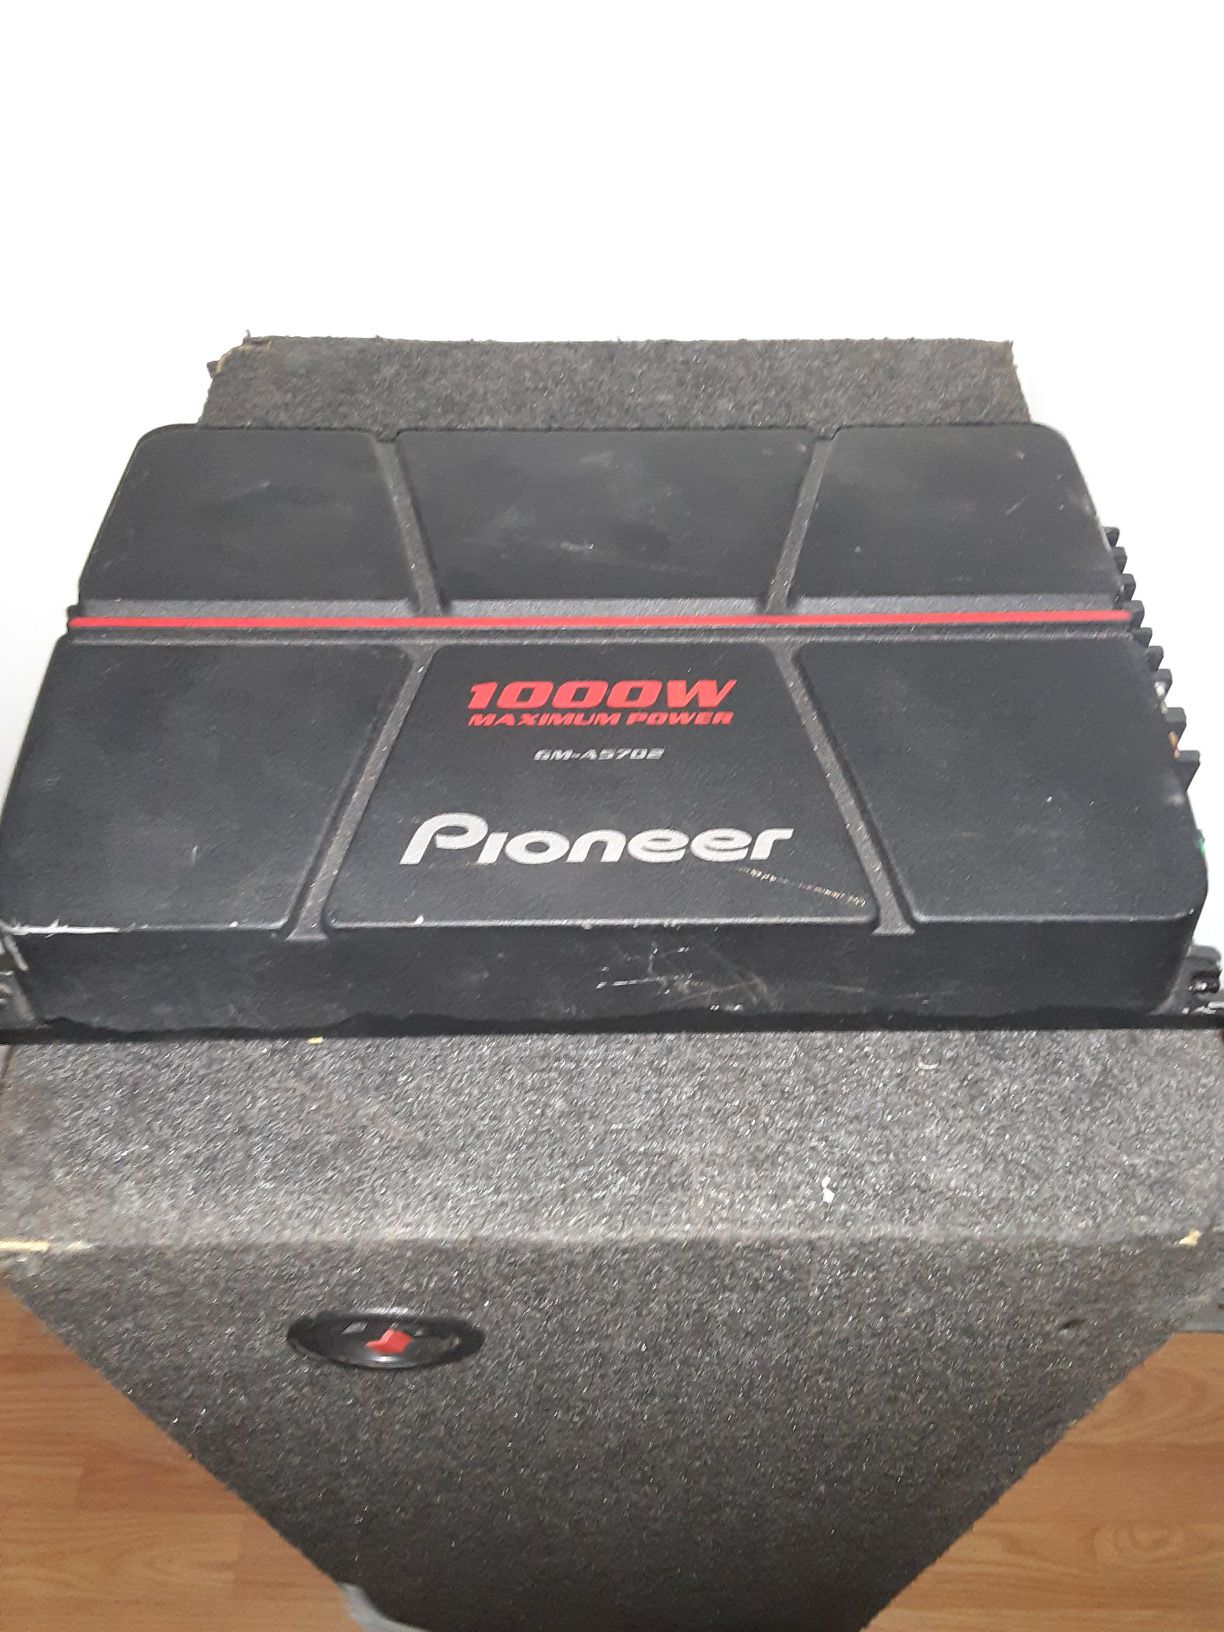 1000w pioneer 2 channel amplifier